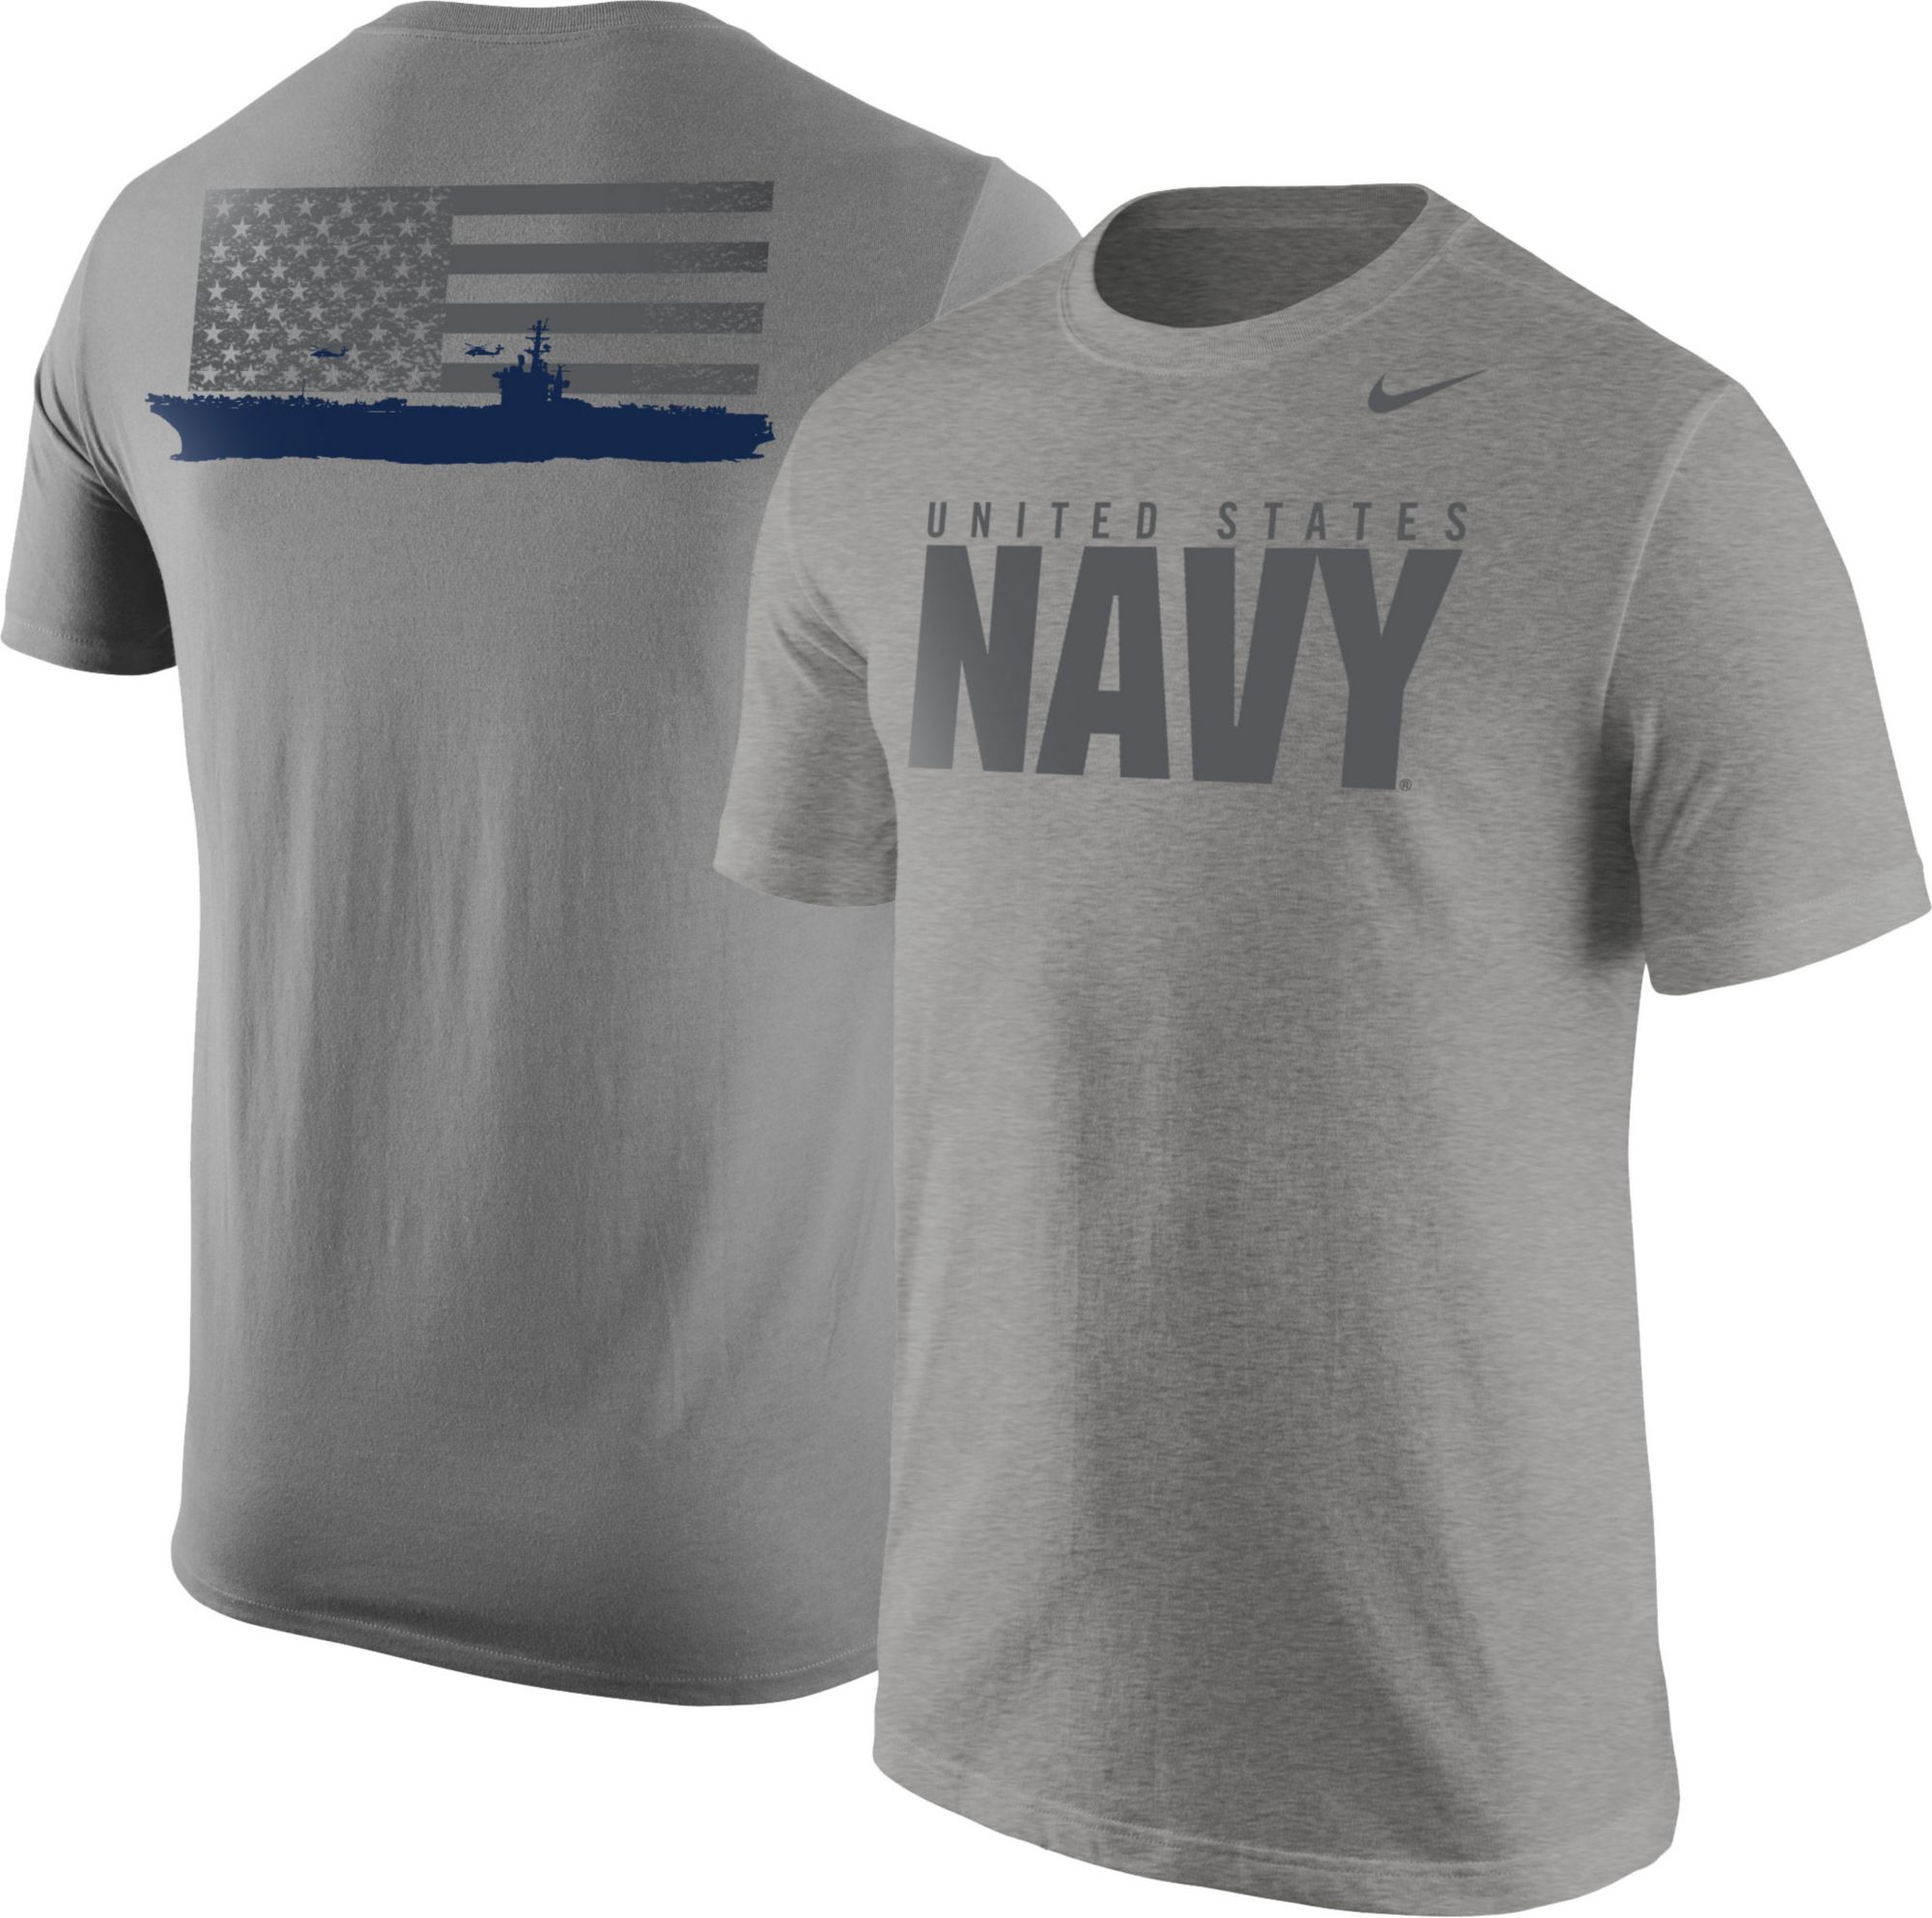 navy nike tshirt